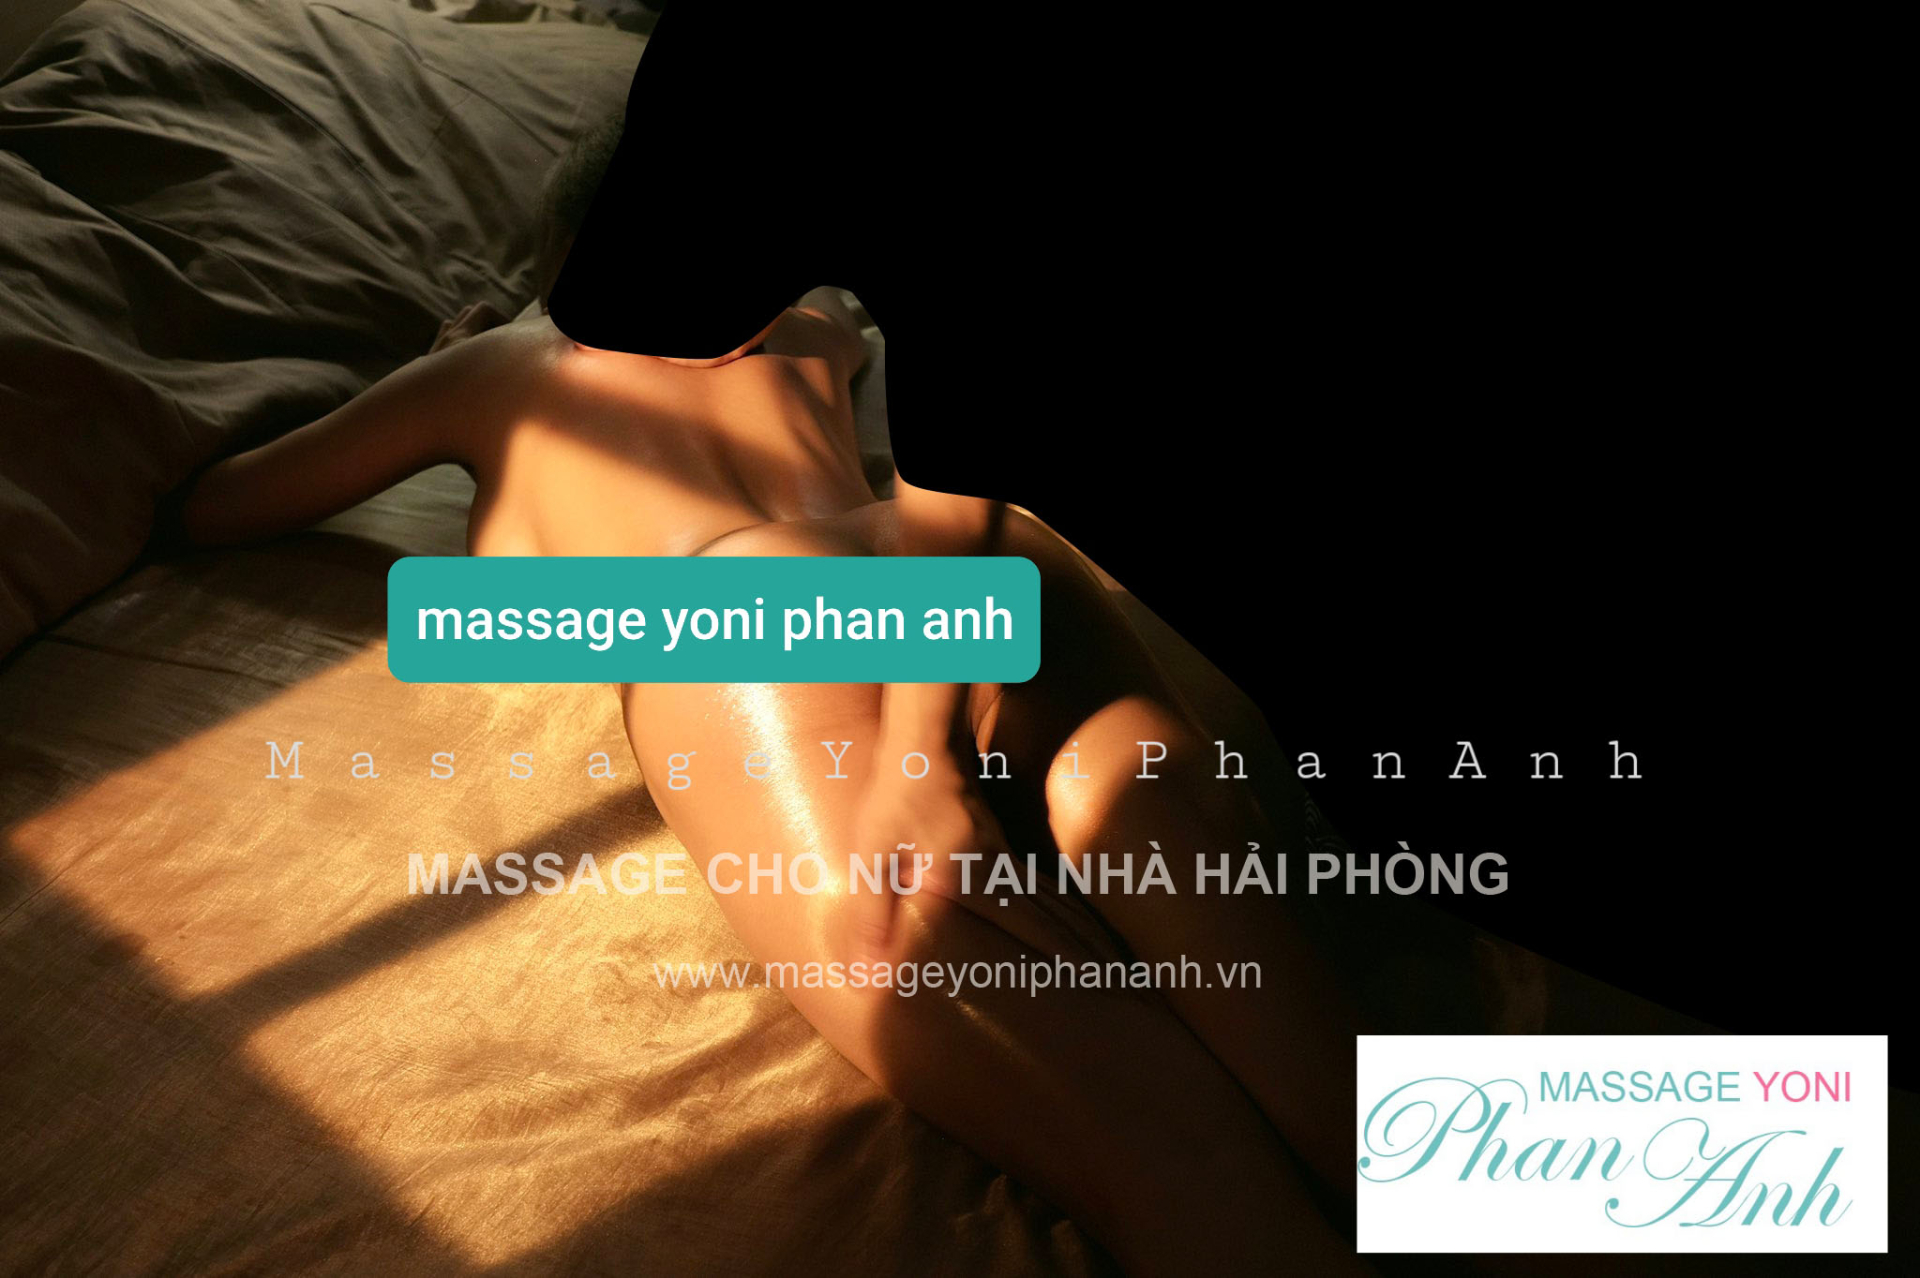 massage-cho-nu-tai-nha-hai-phong